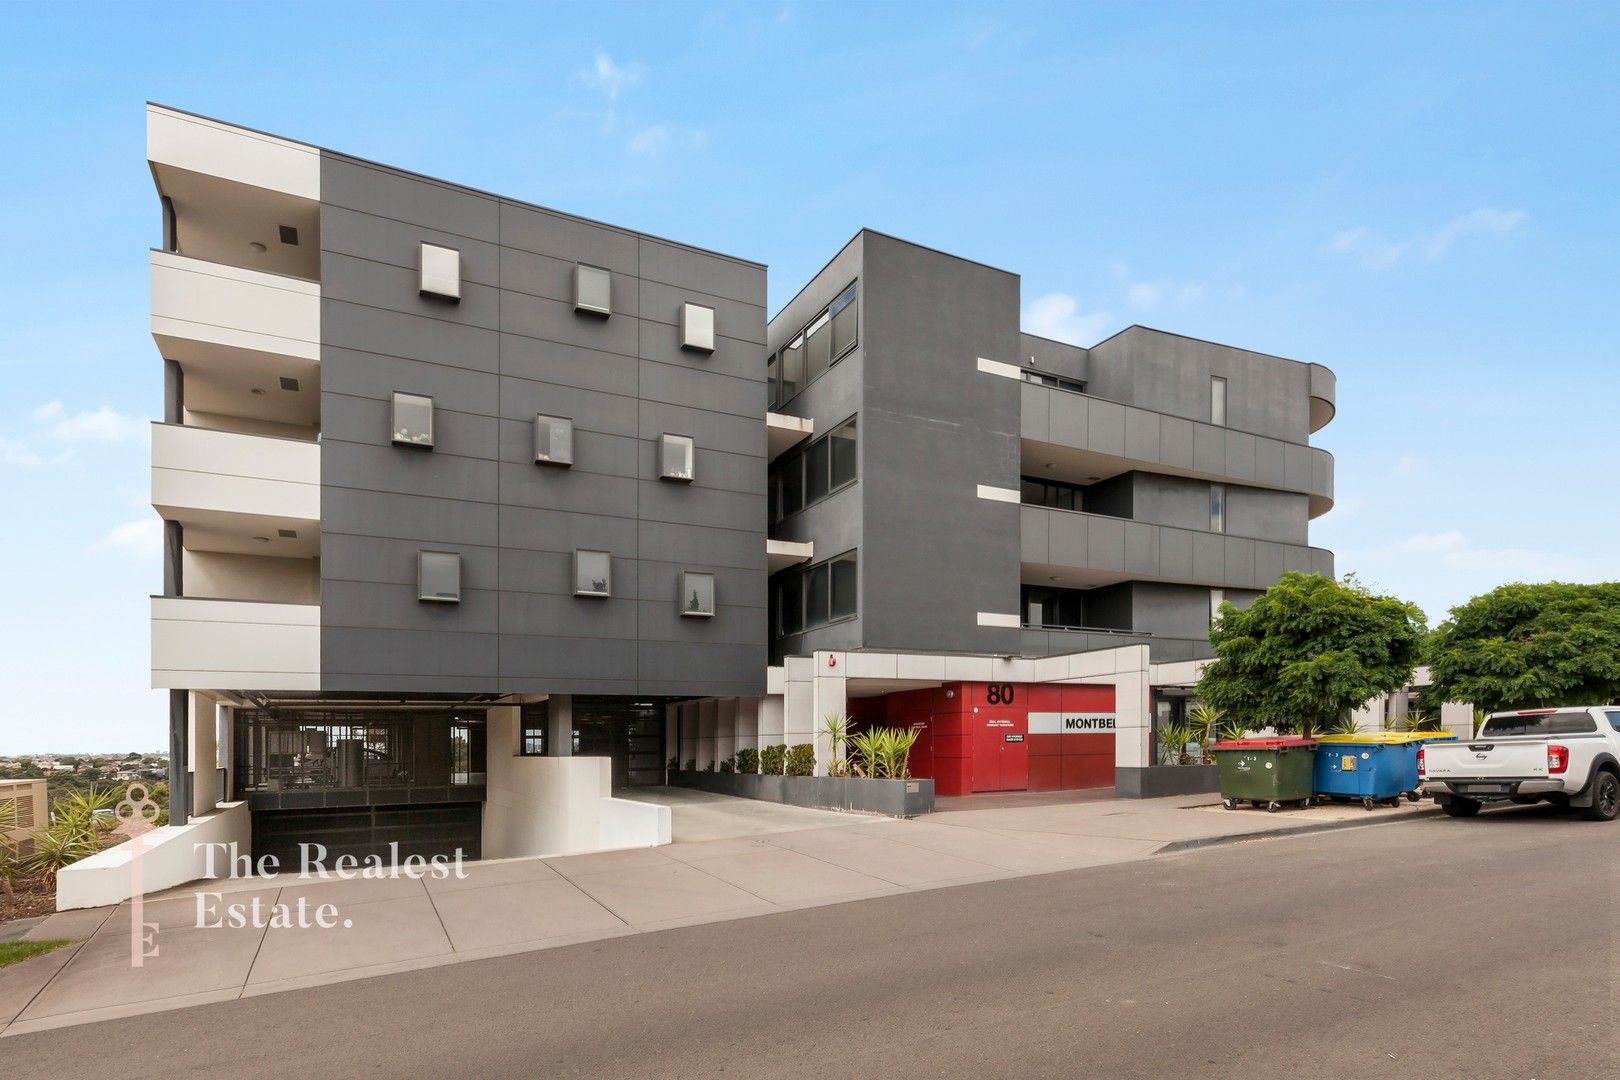 1 bedrooms Apartment / Unit / Flat in 308/80 La Scala Avenue MARIBYRNONG VIC, 3032